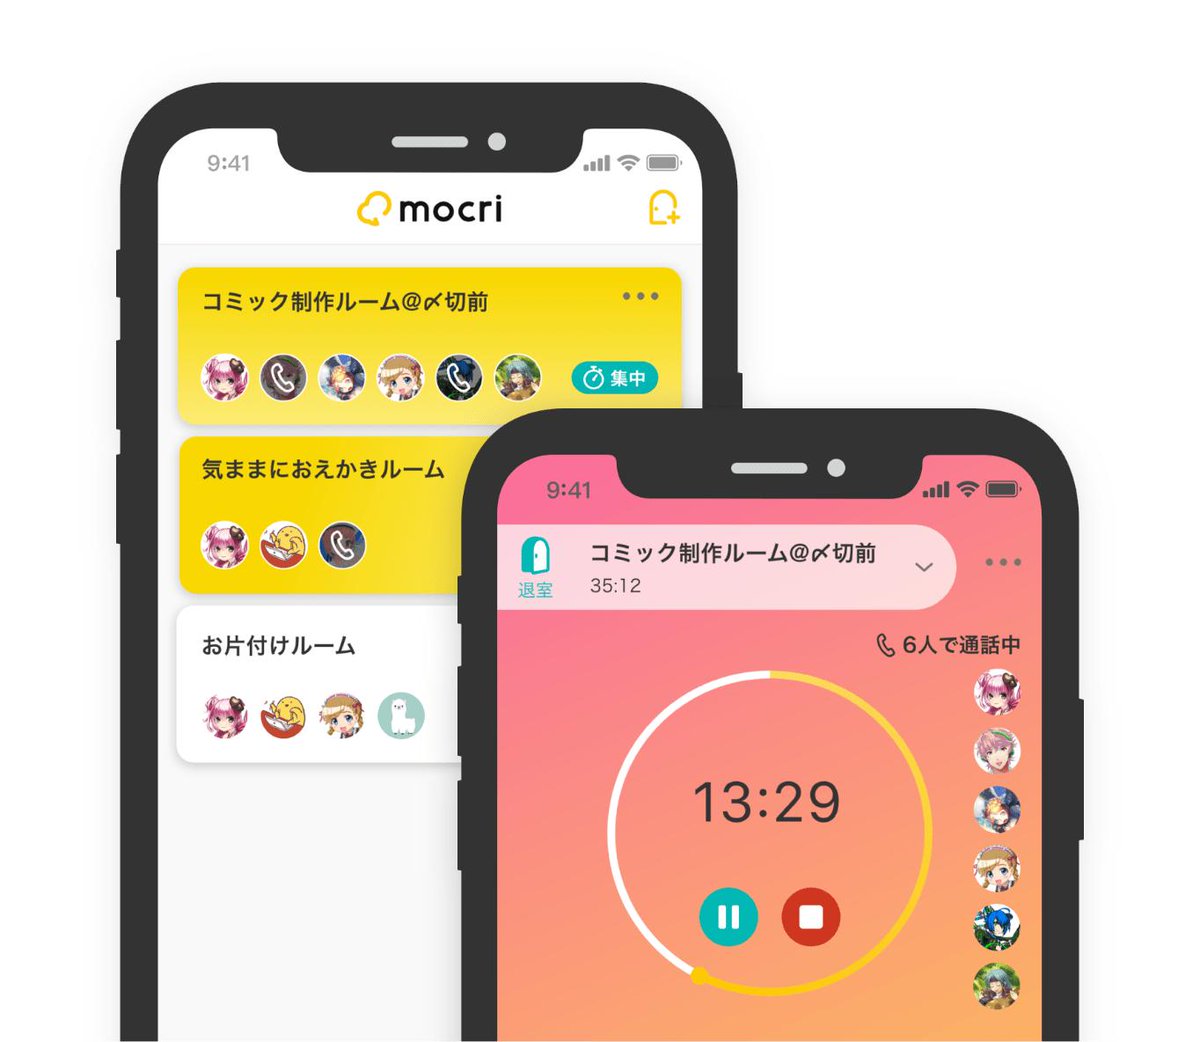 Mocri もくり ふらっと集まれる作業通話アプリ わかりづらくて申し訳ありません ルームに誰かがいるときには 添付の画像の左側の画面のように黄色くなりつつ 入っている人のアイコンに電話マークがつくようになっています よりわかりやすいよう